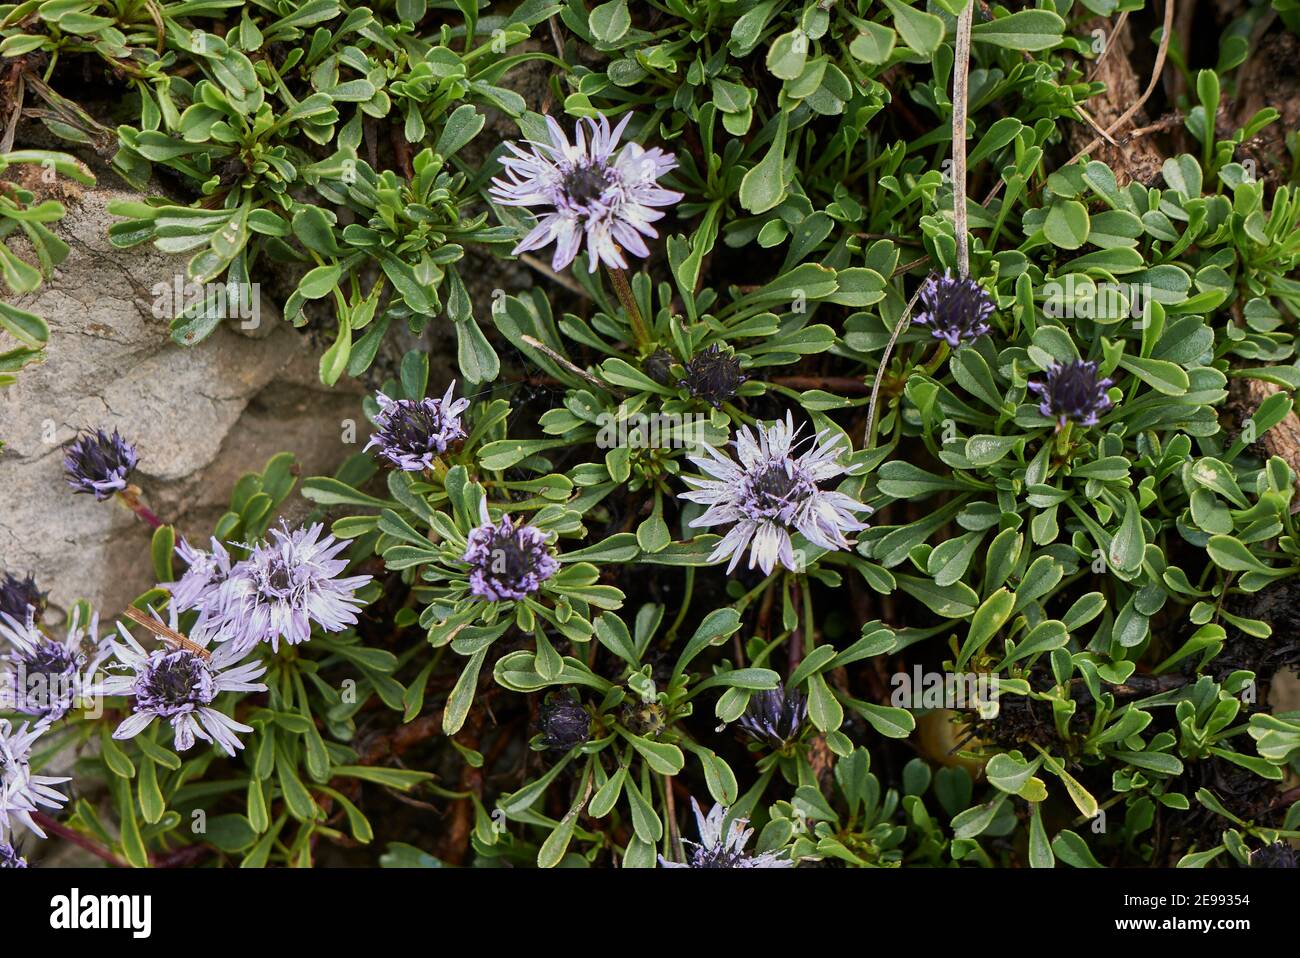 Globularia cordifolia blue flower close up Stock Photo